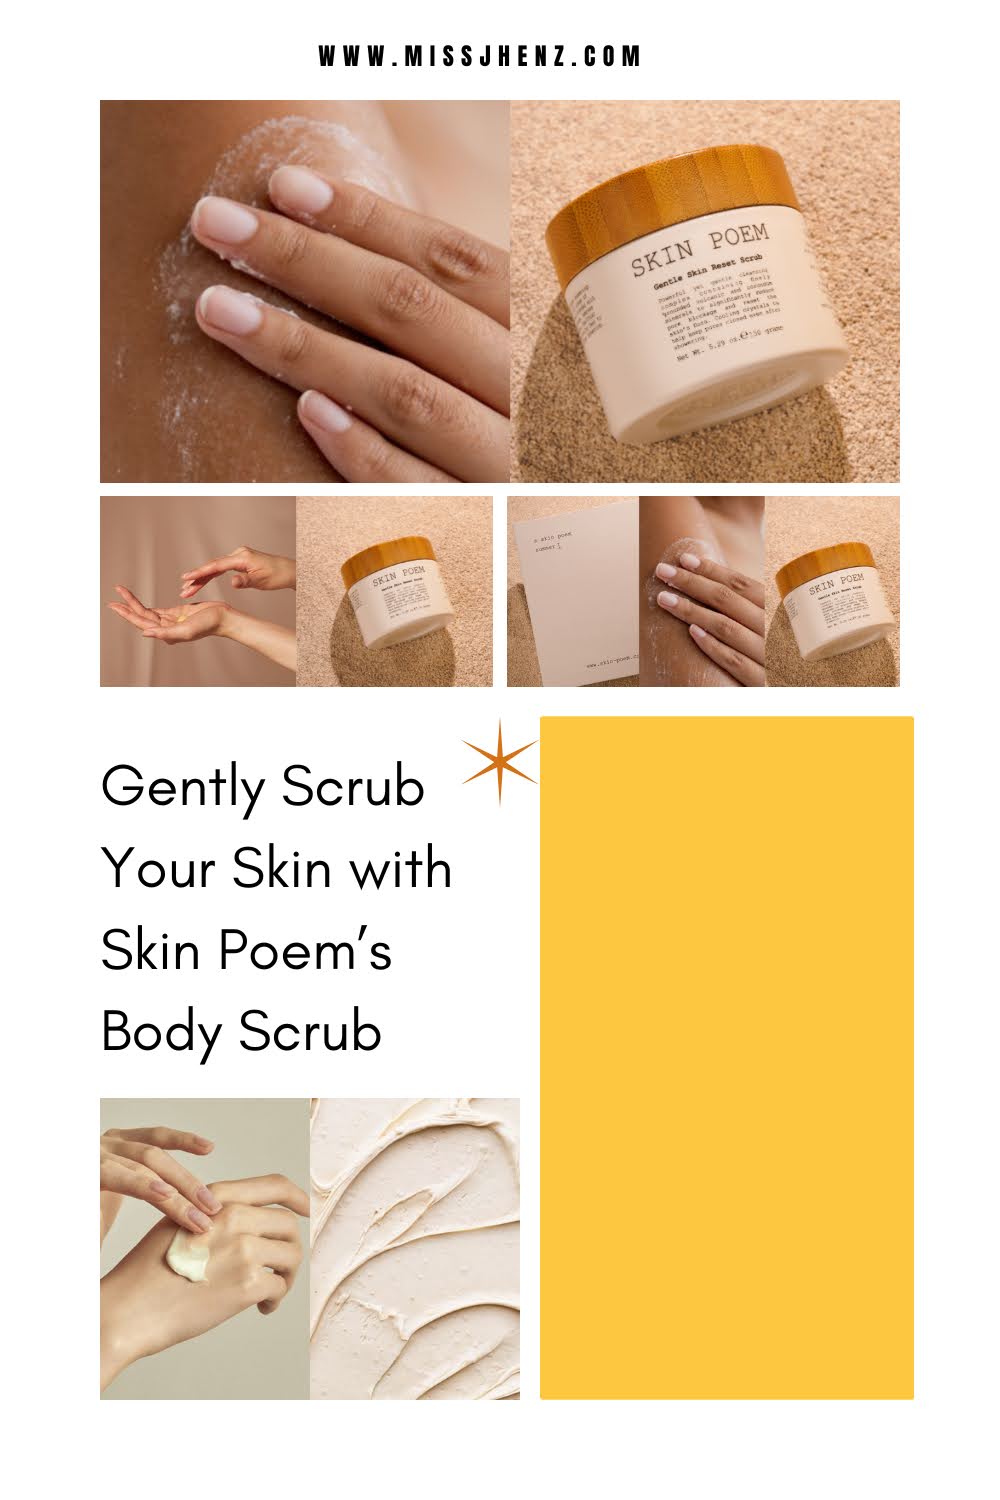 Gently Scrub Your Skin with Skin Poem’s Body Scrub